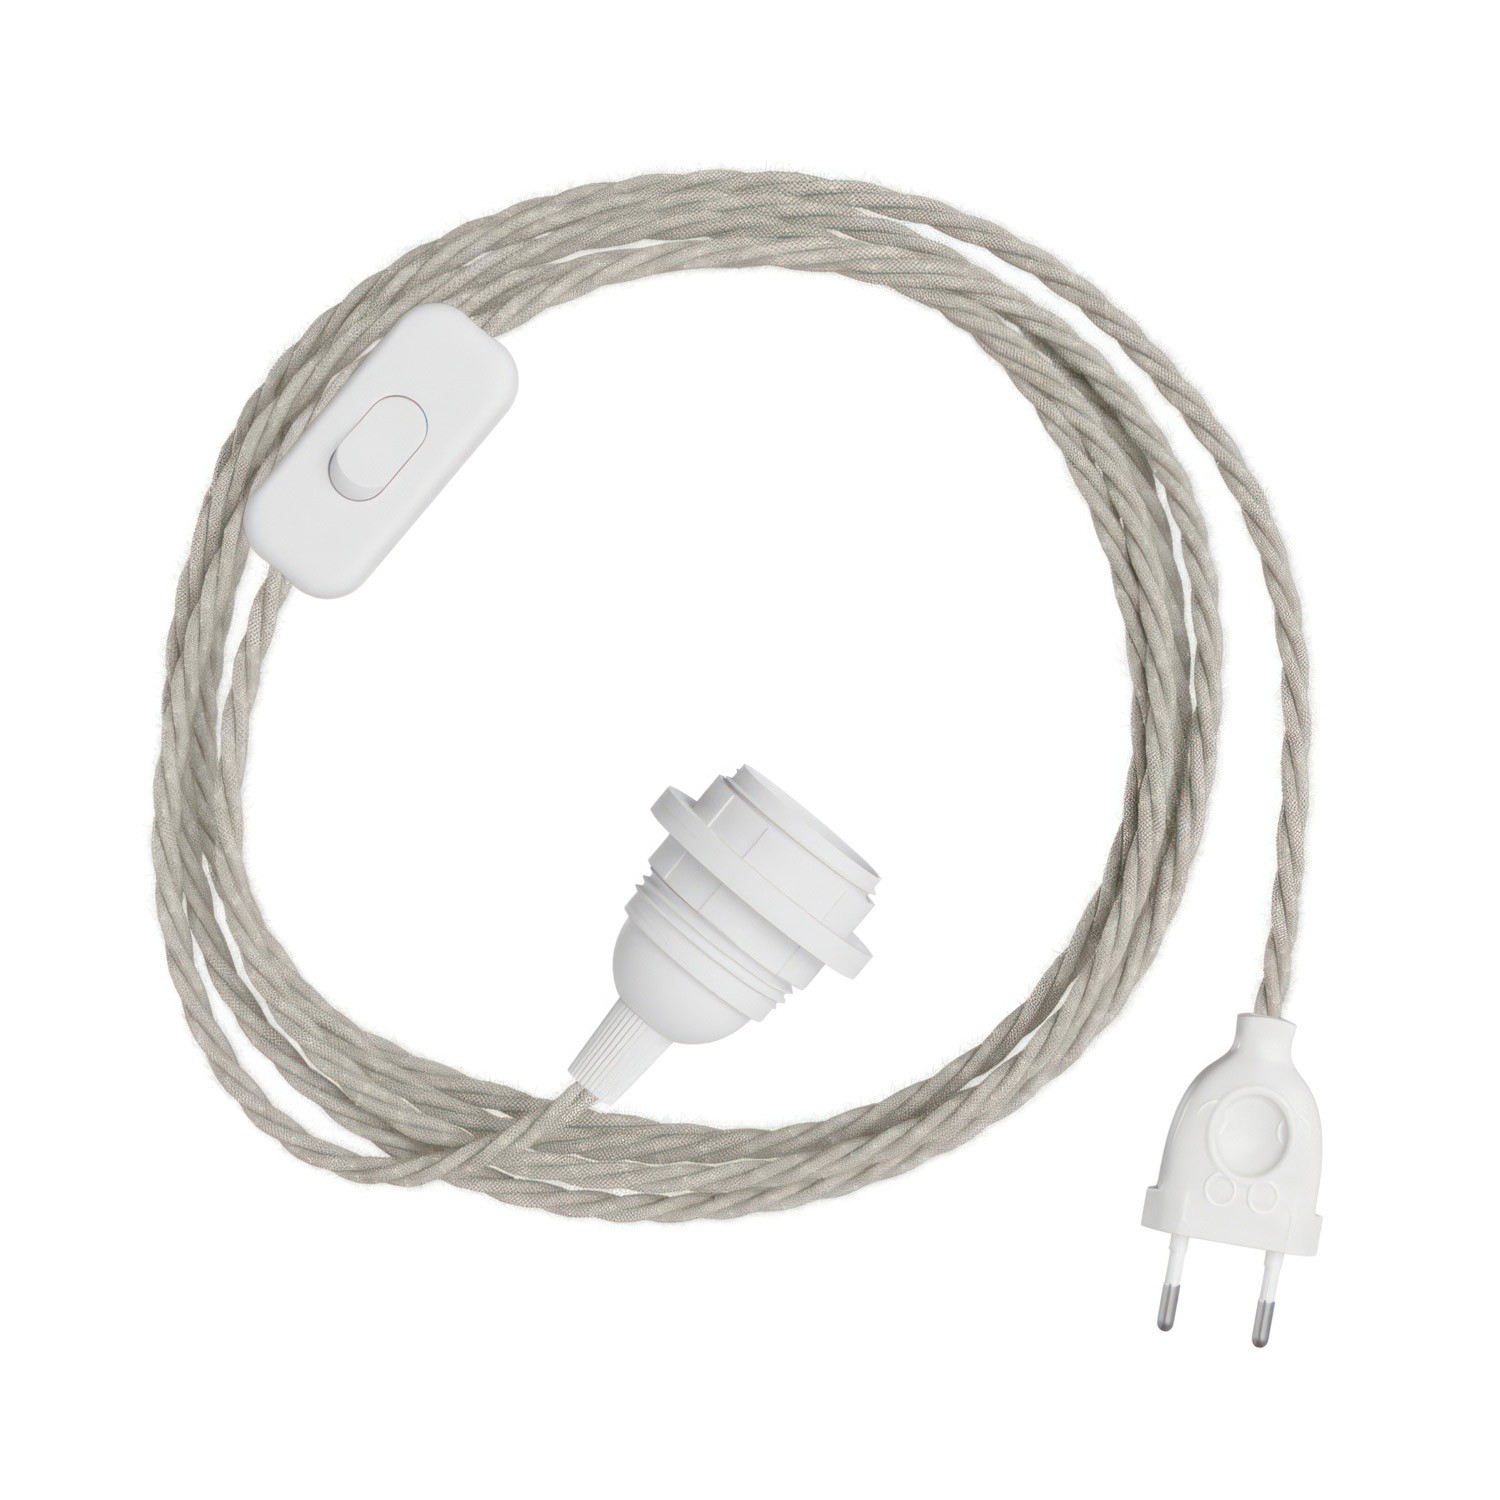 SnakeBis Twisted für Lampenschirm - Leuchtenzuleitung mit Lampenfassung und geflochtenem Textilkabel